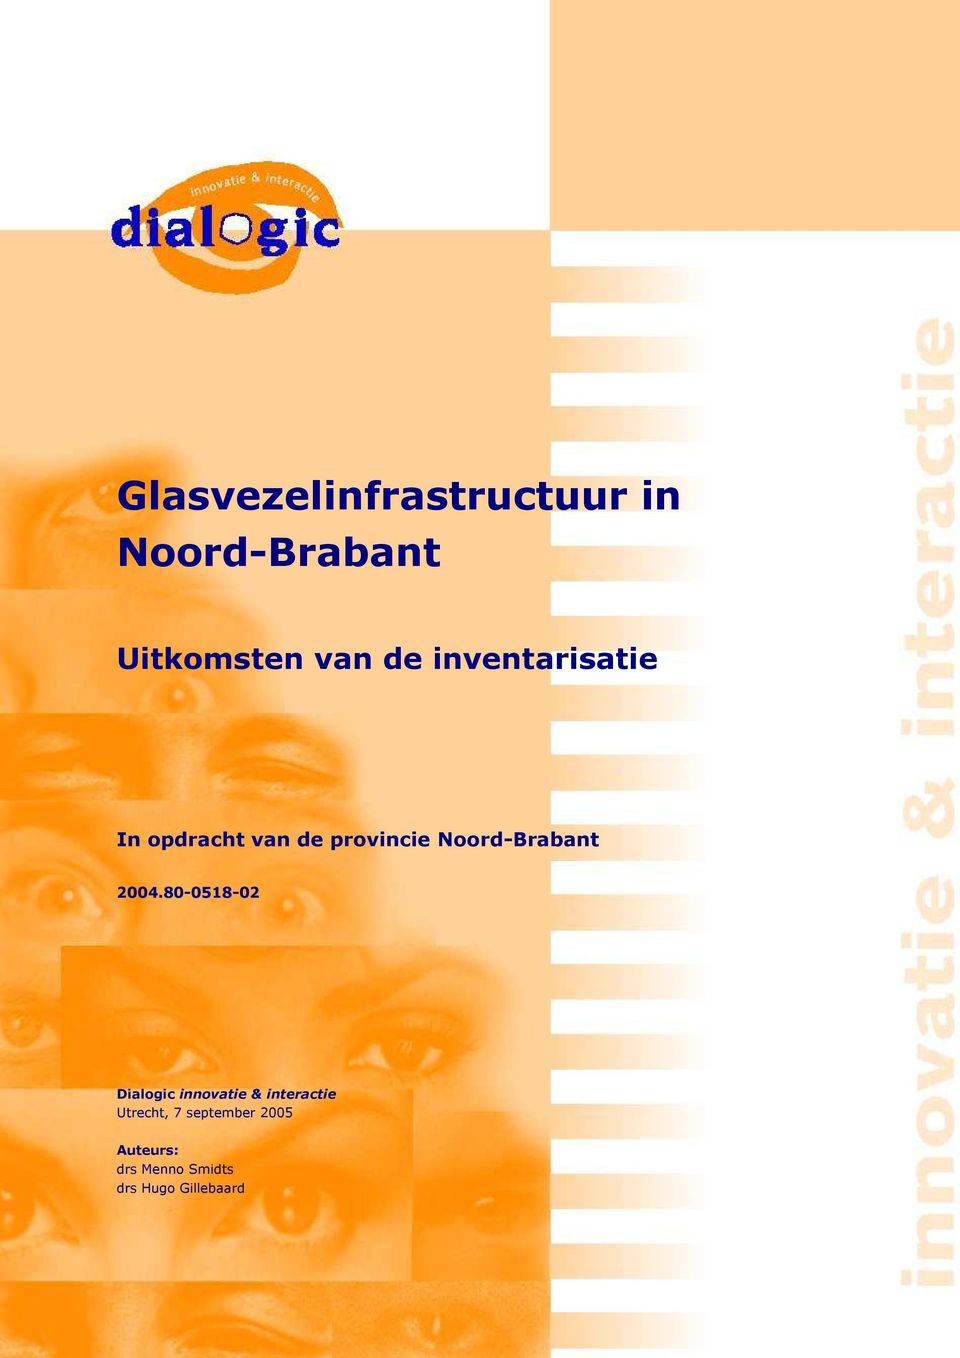 2004.80 0518 02 Dialogic innovatie & interactie Utrecht, 7